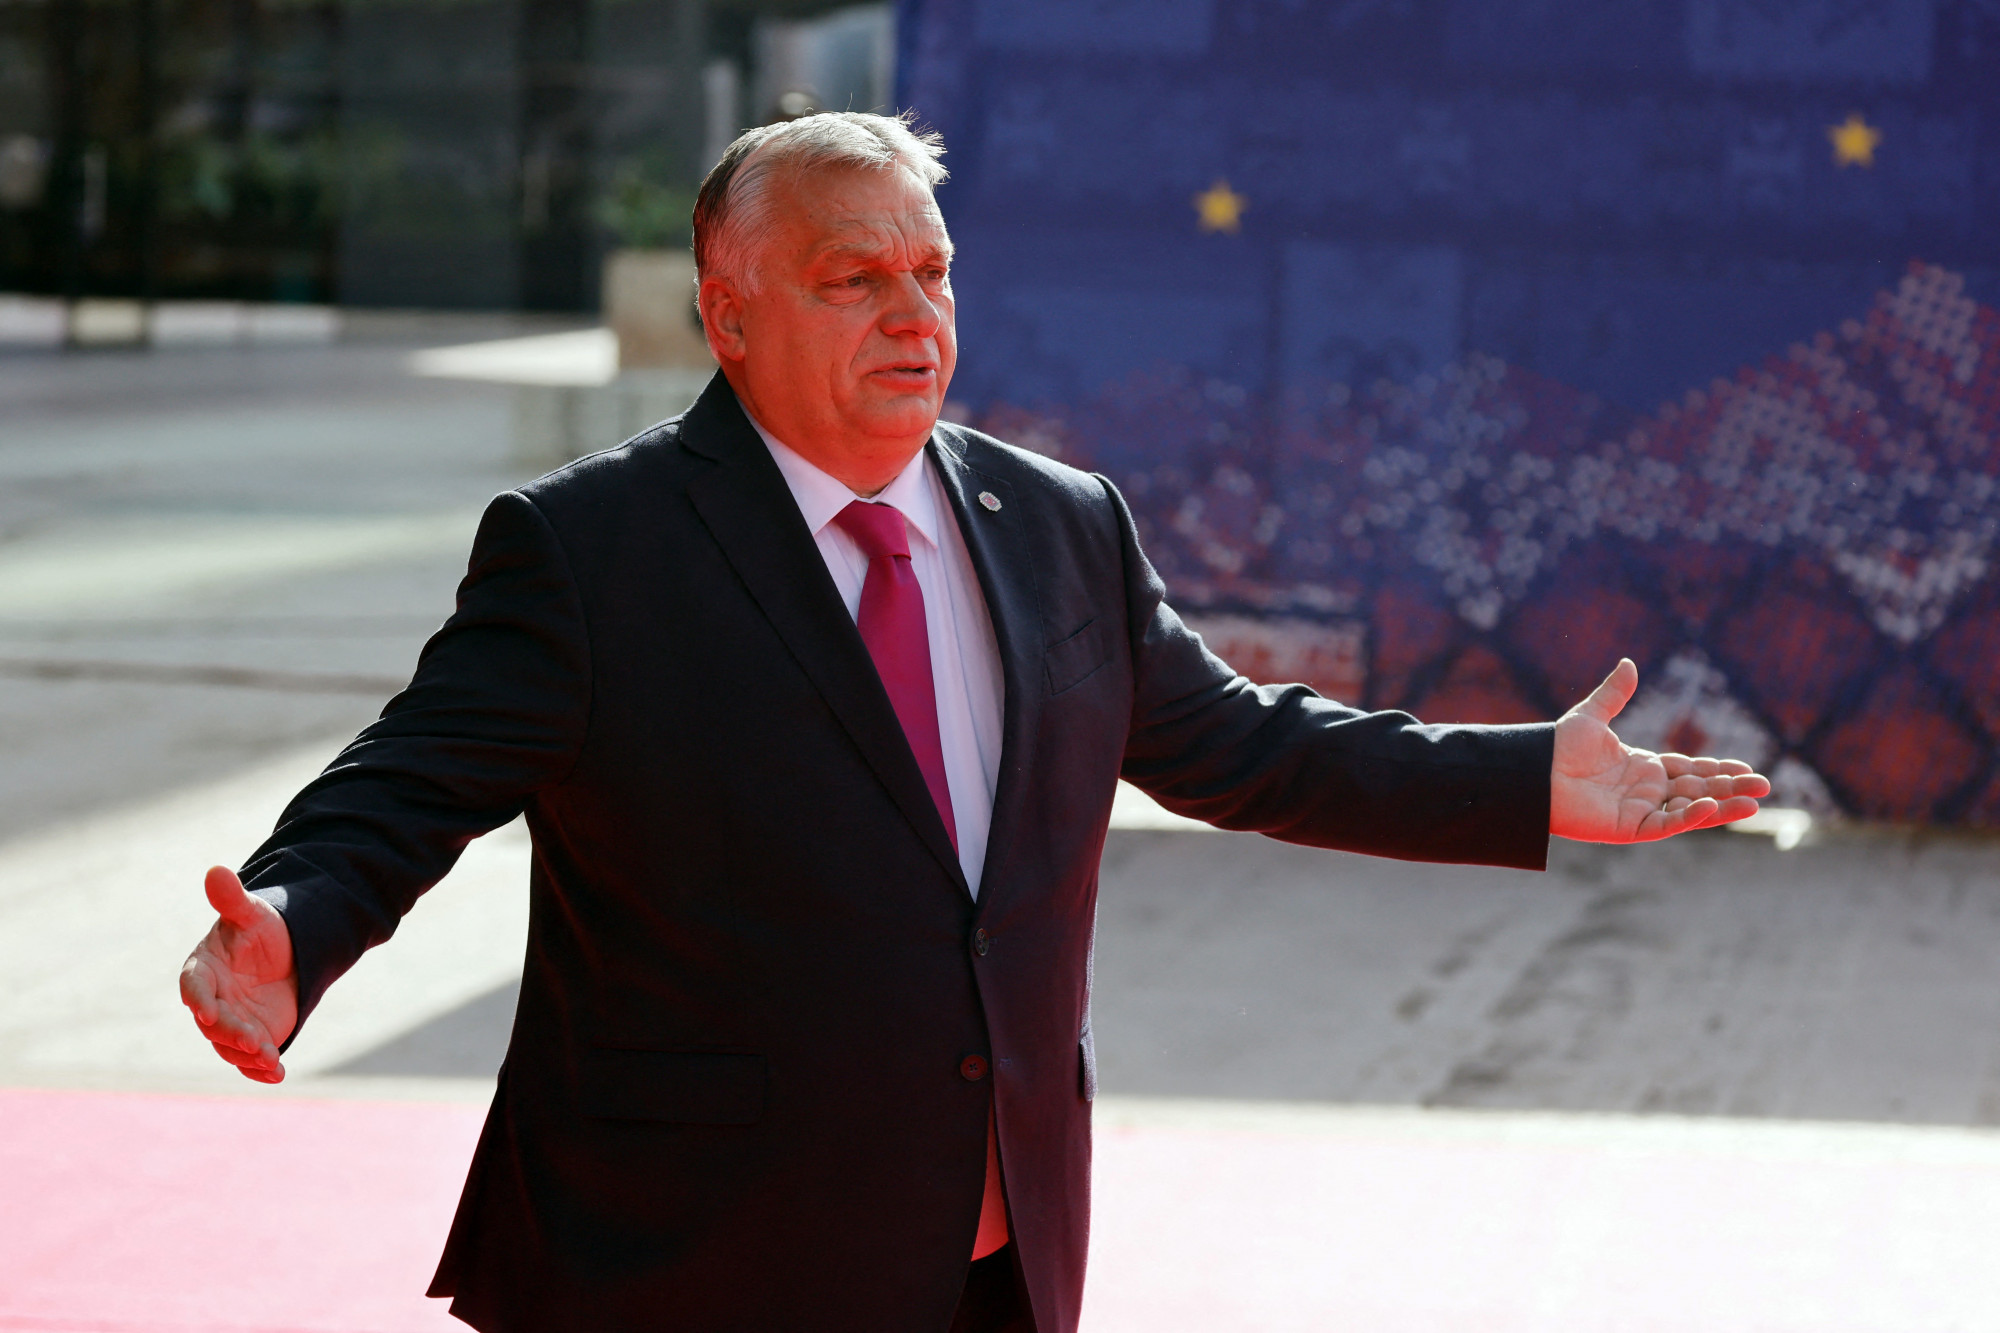 Európa második „legbomlasztóbb” embere Orbán a Politico listáján